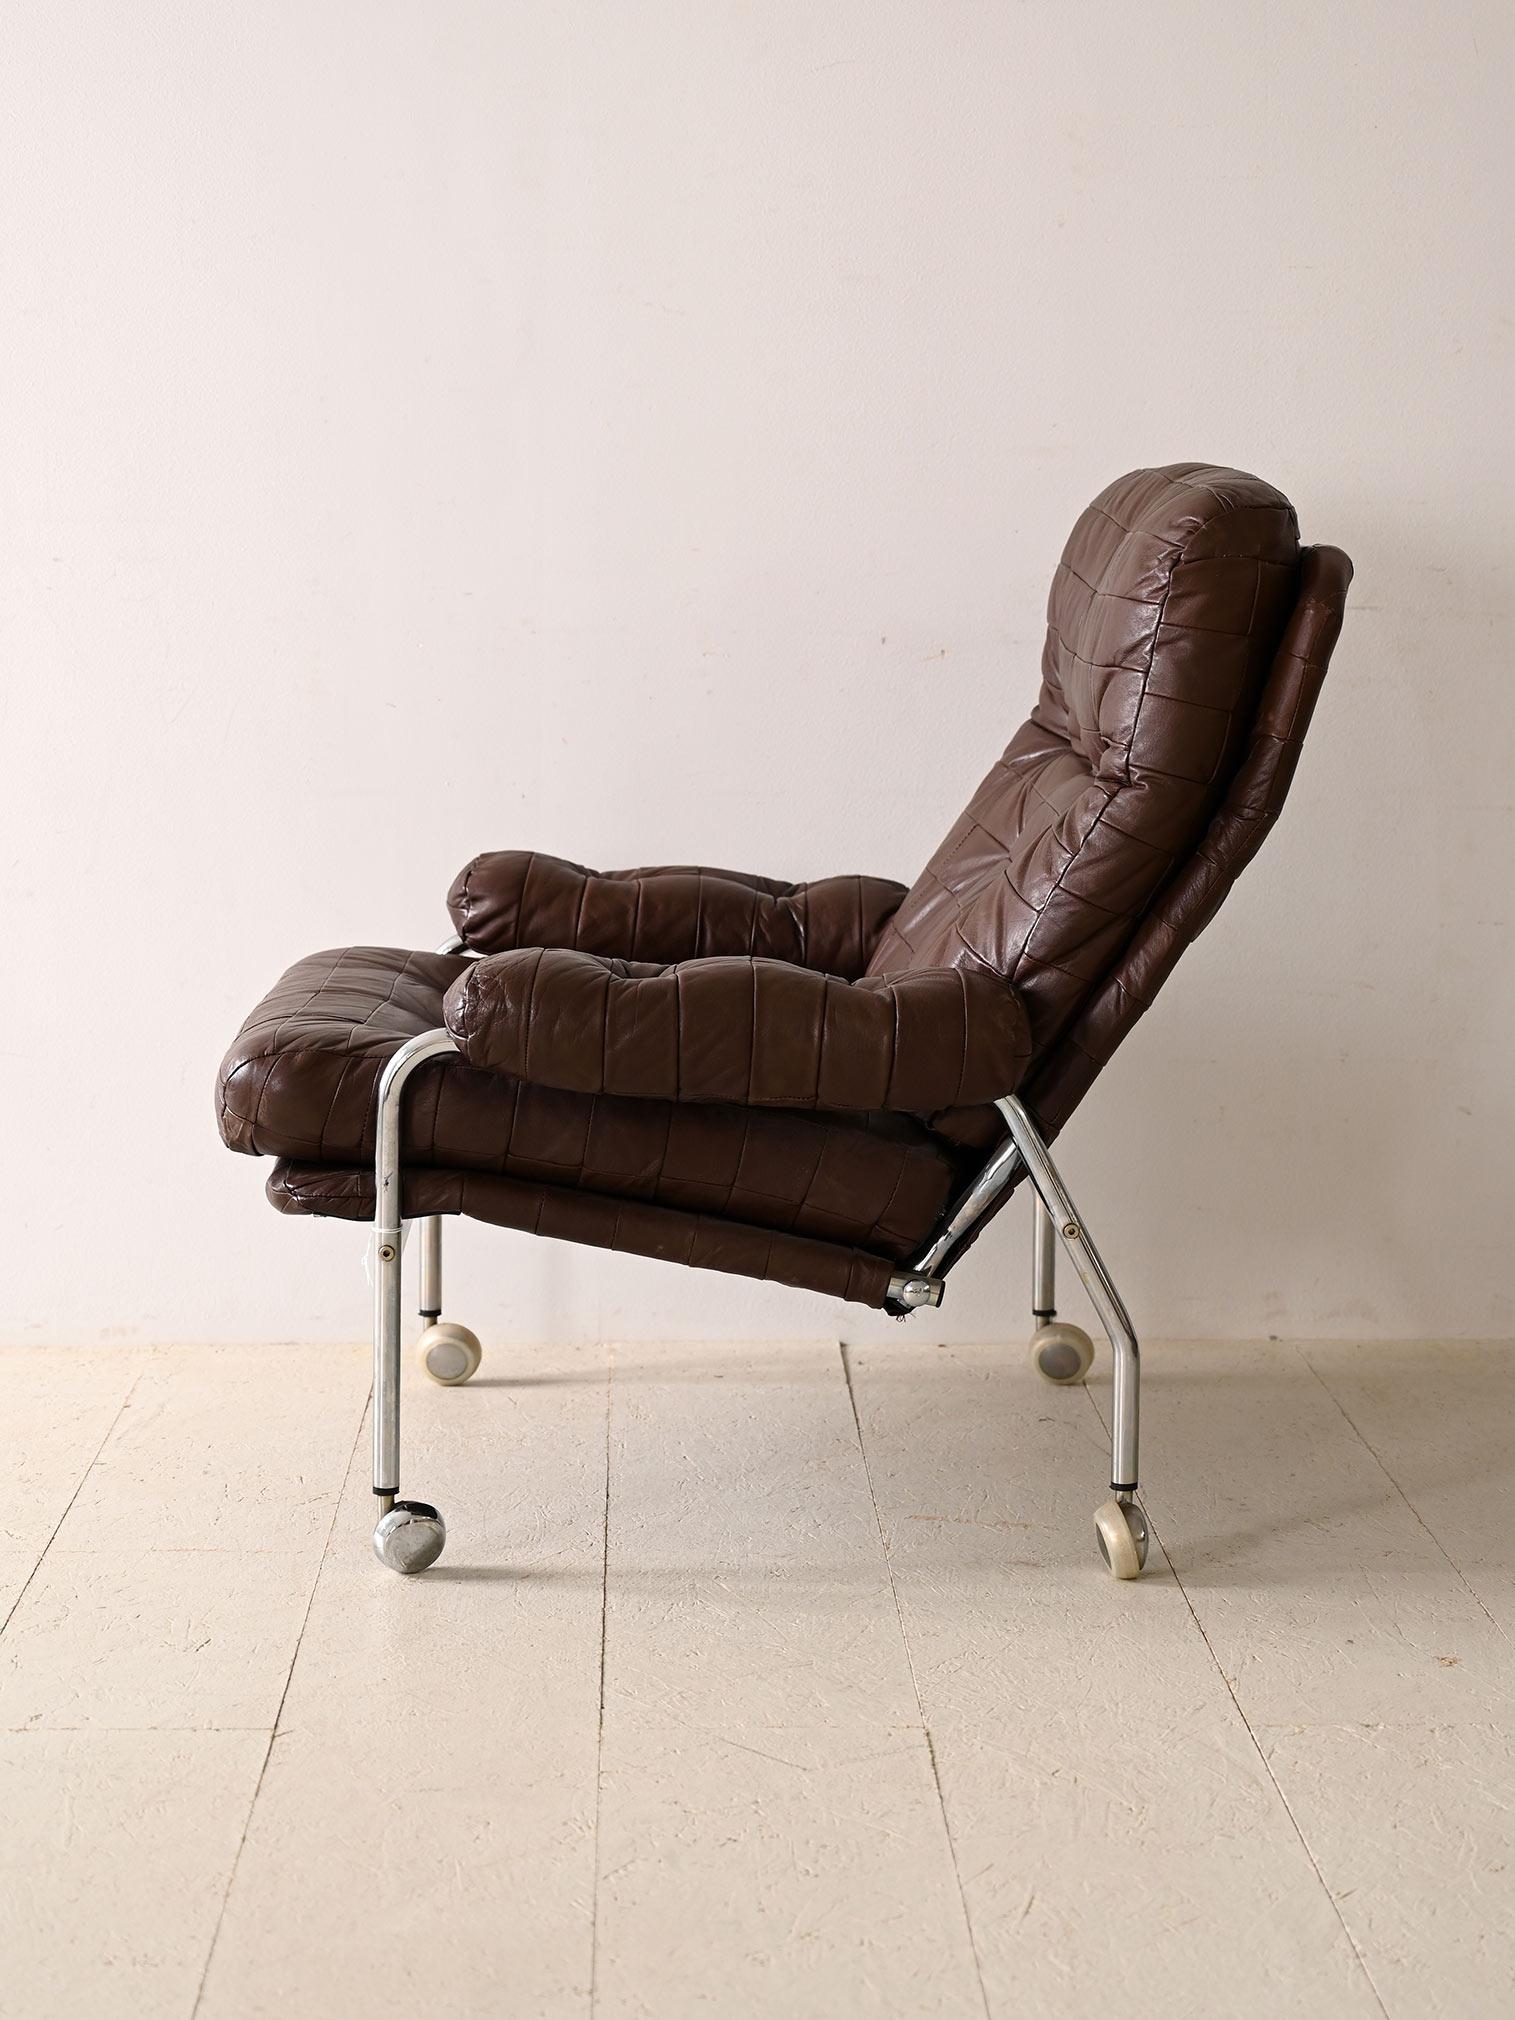 Skandinavischer Stuhl mit Rollen. Er besteht aus einem robusten und langlebigen Metallrahmen, der ihm einen industriellen Touch und zeitlose Eleganz verleiht. Die mit Rädern versehenen Beine ermöglichen ein leichtes Verschieben und verleihen dem